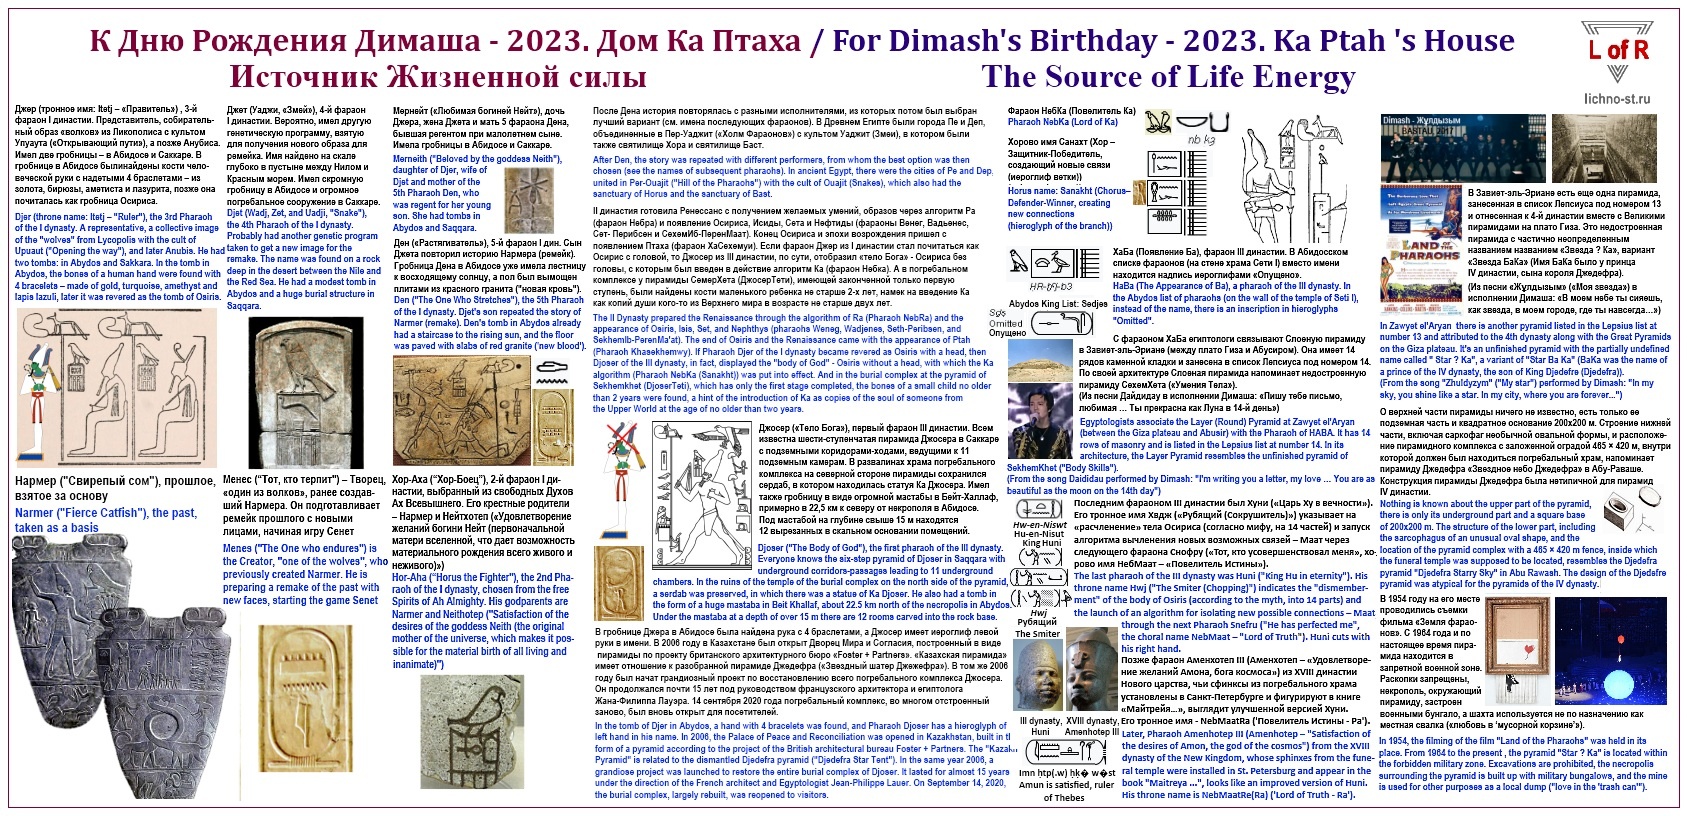 For Dimash's Birthday-2023. Ka Ptah 's House The Source of Life Energy - К Дню Рождения Димаша - 2023 Дом Ка Птаха Источник Жизненной Силы